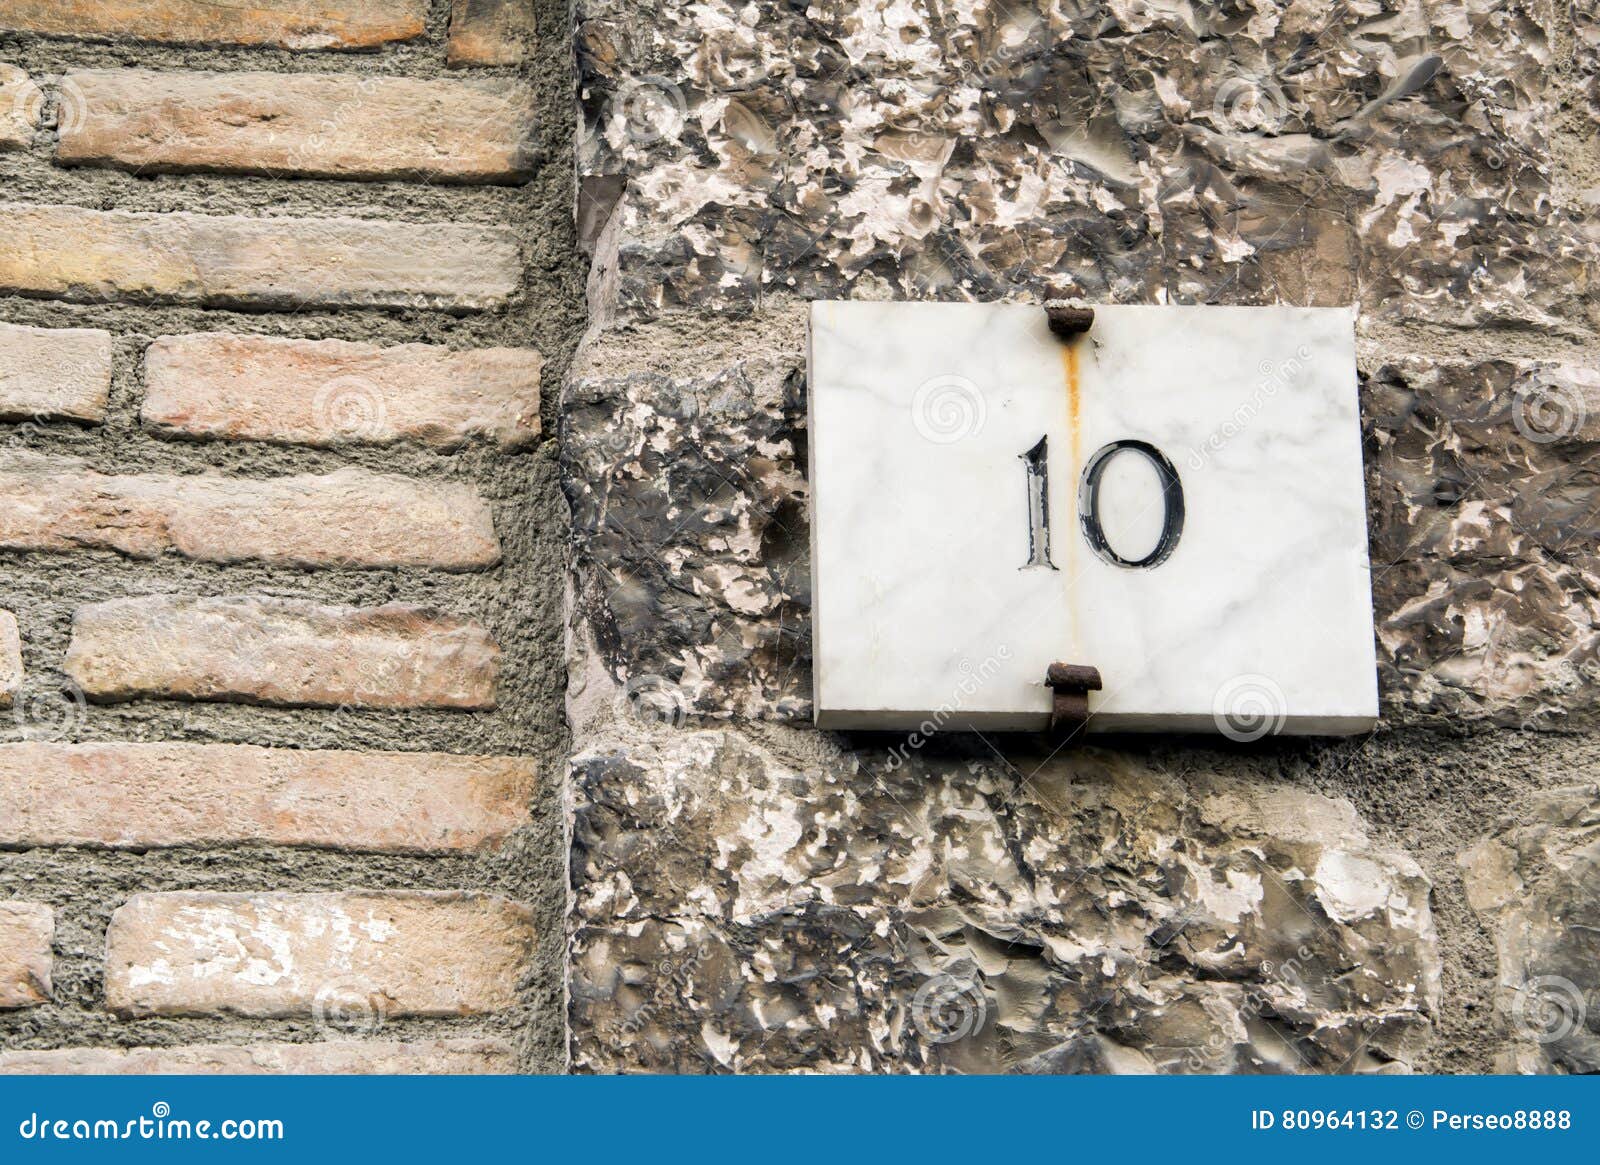 Saai bezorgdheid ondergronds Huisnummer 10 teken stock foto. Image of italiaans, adres - 80964132